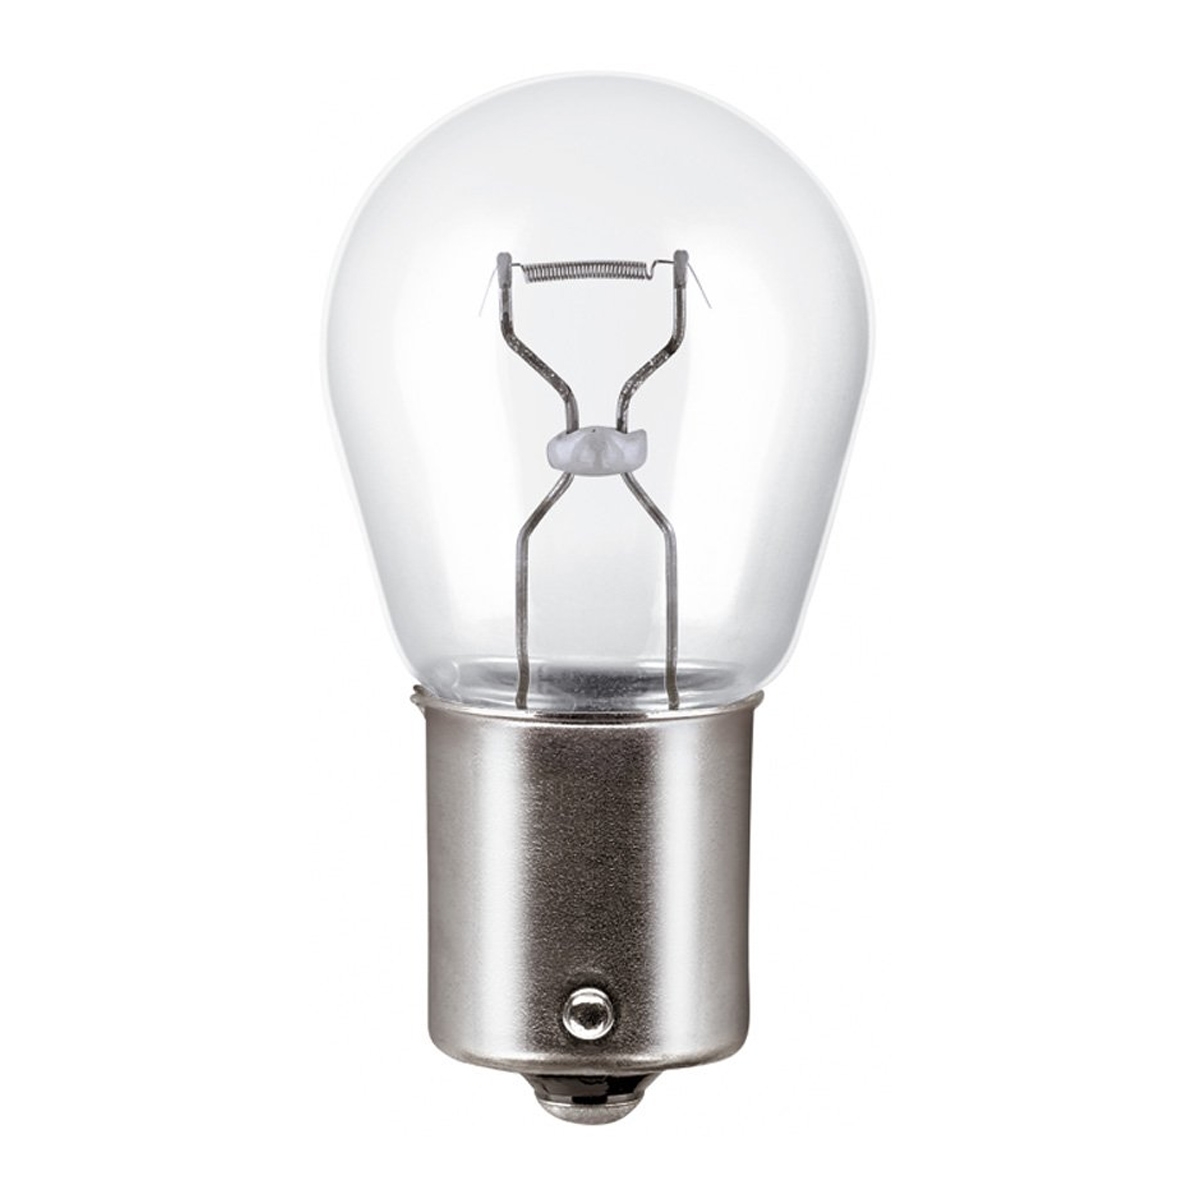 Reverse Light Bulb